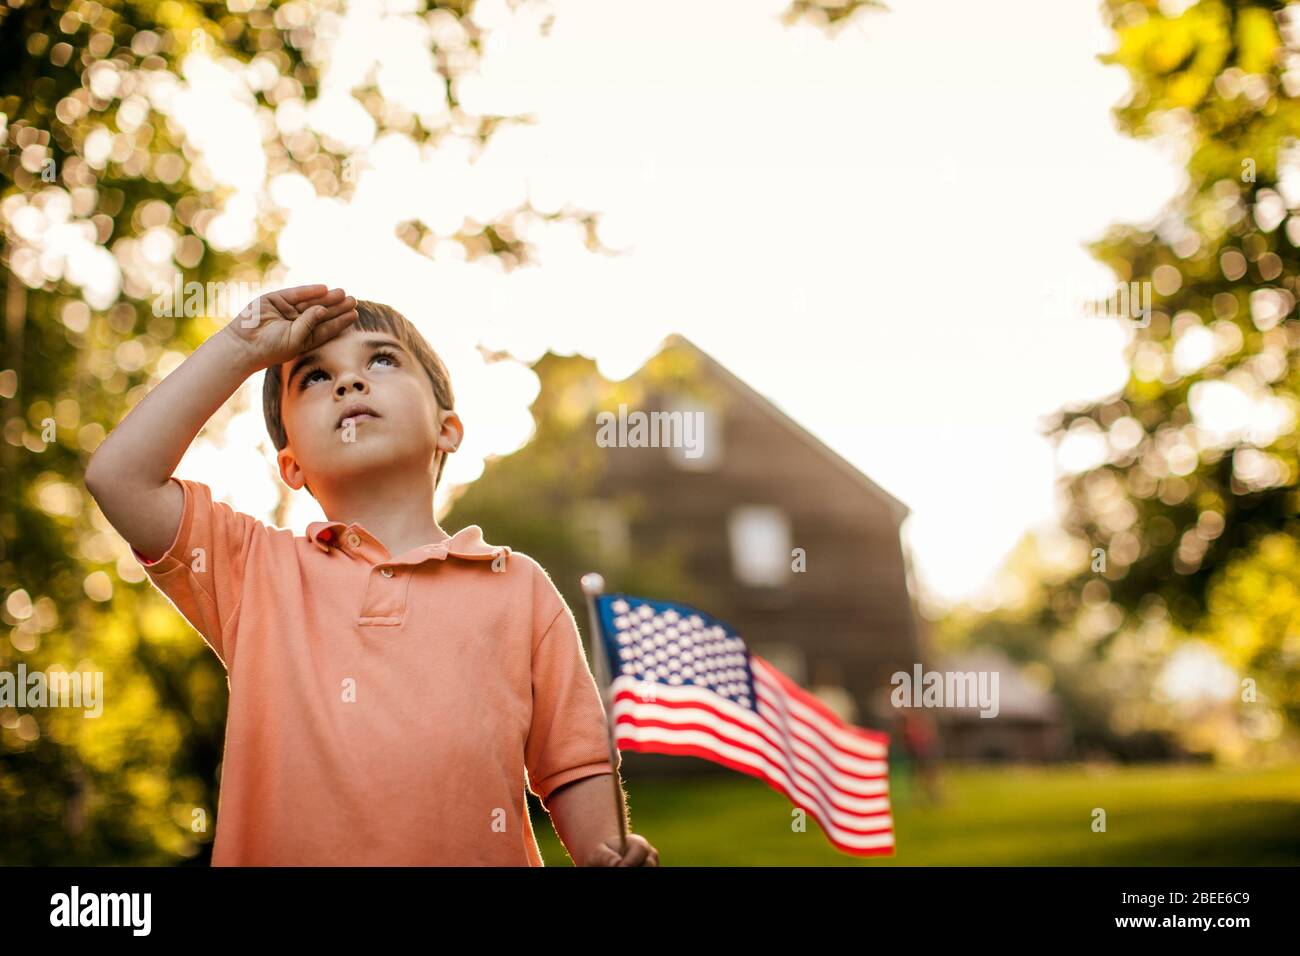 Jeune garçon salue tout en tenant un drapeau américain Banque D'Images